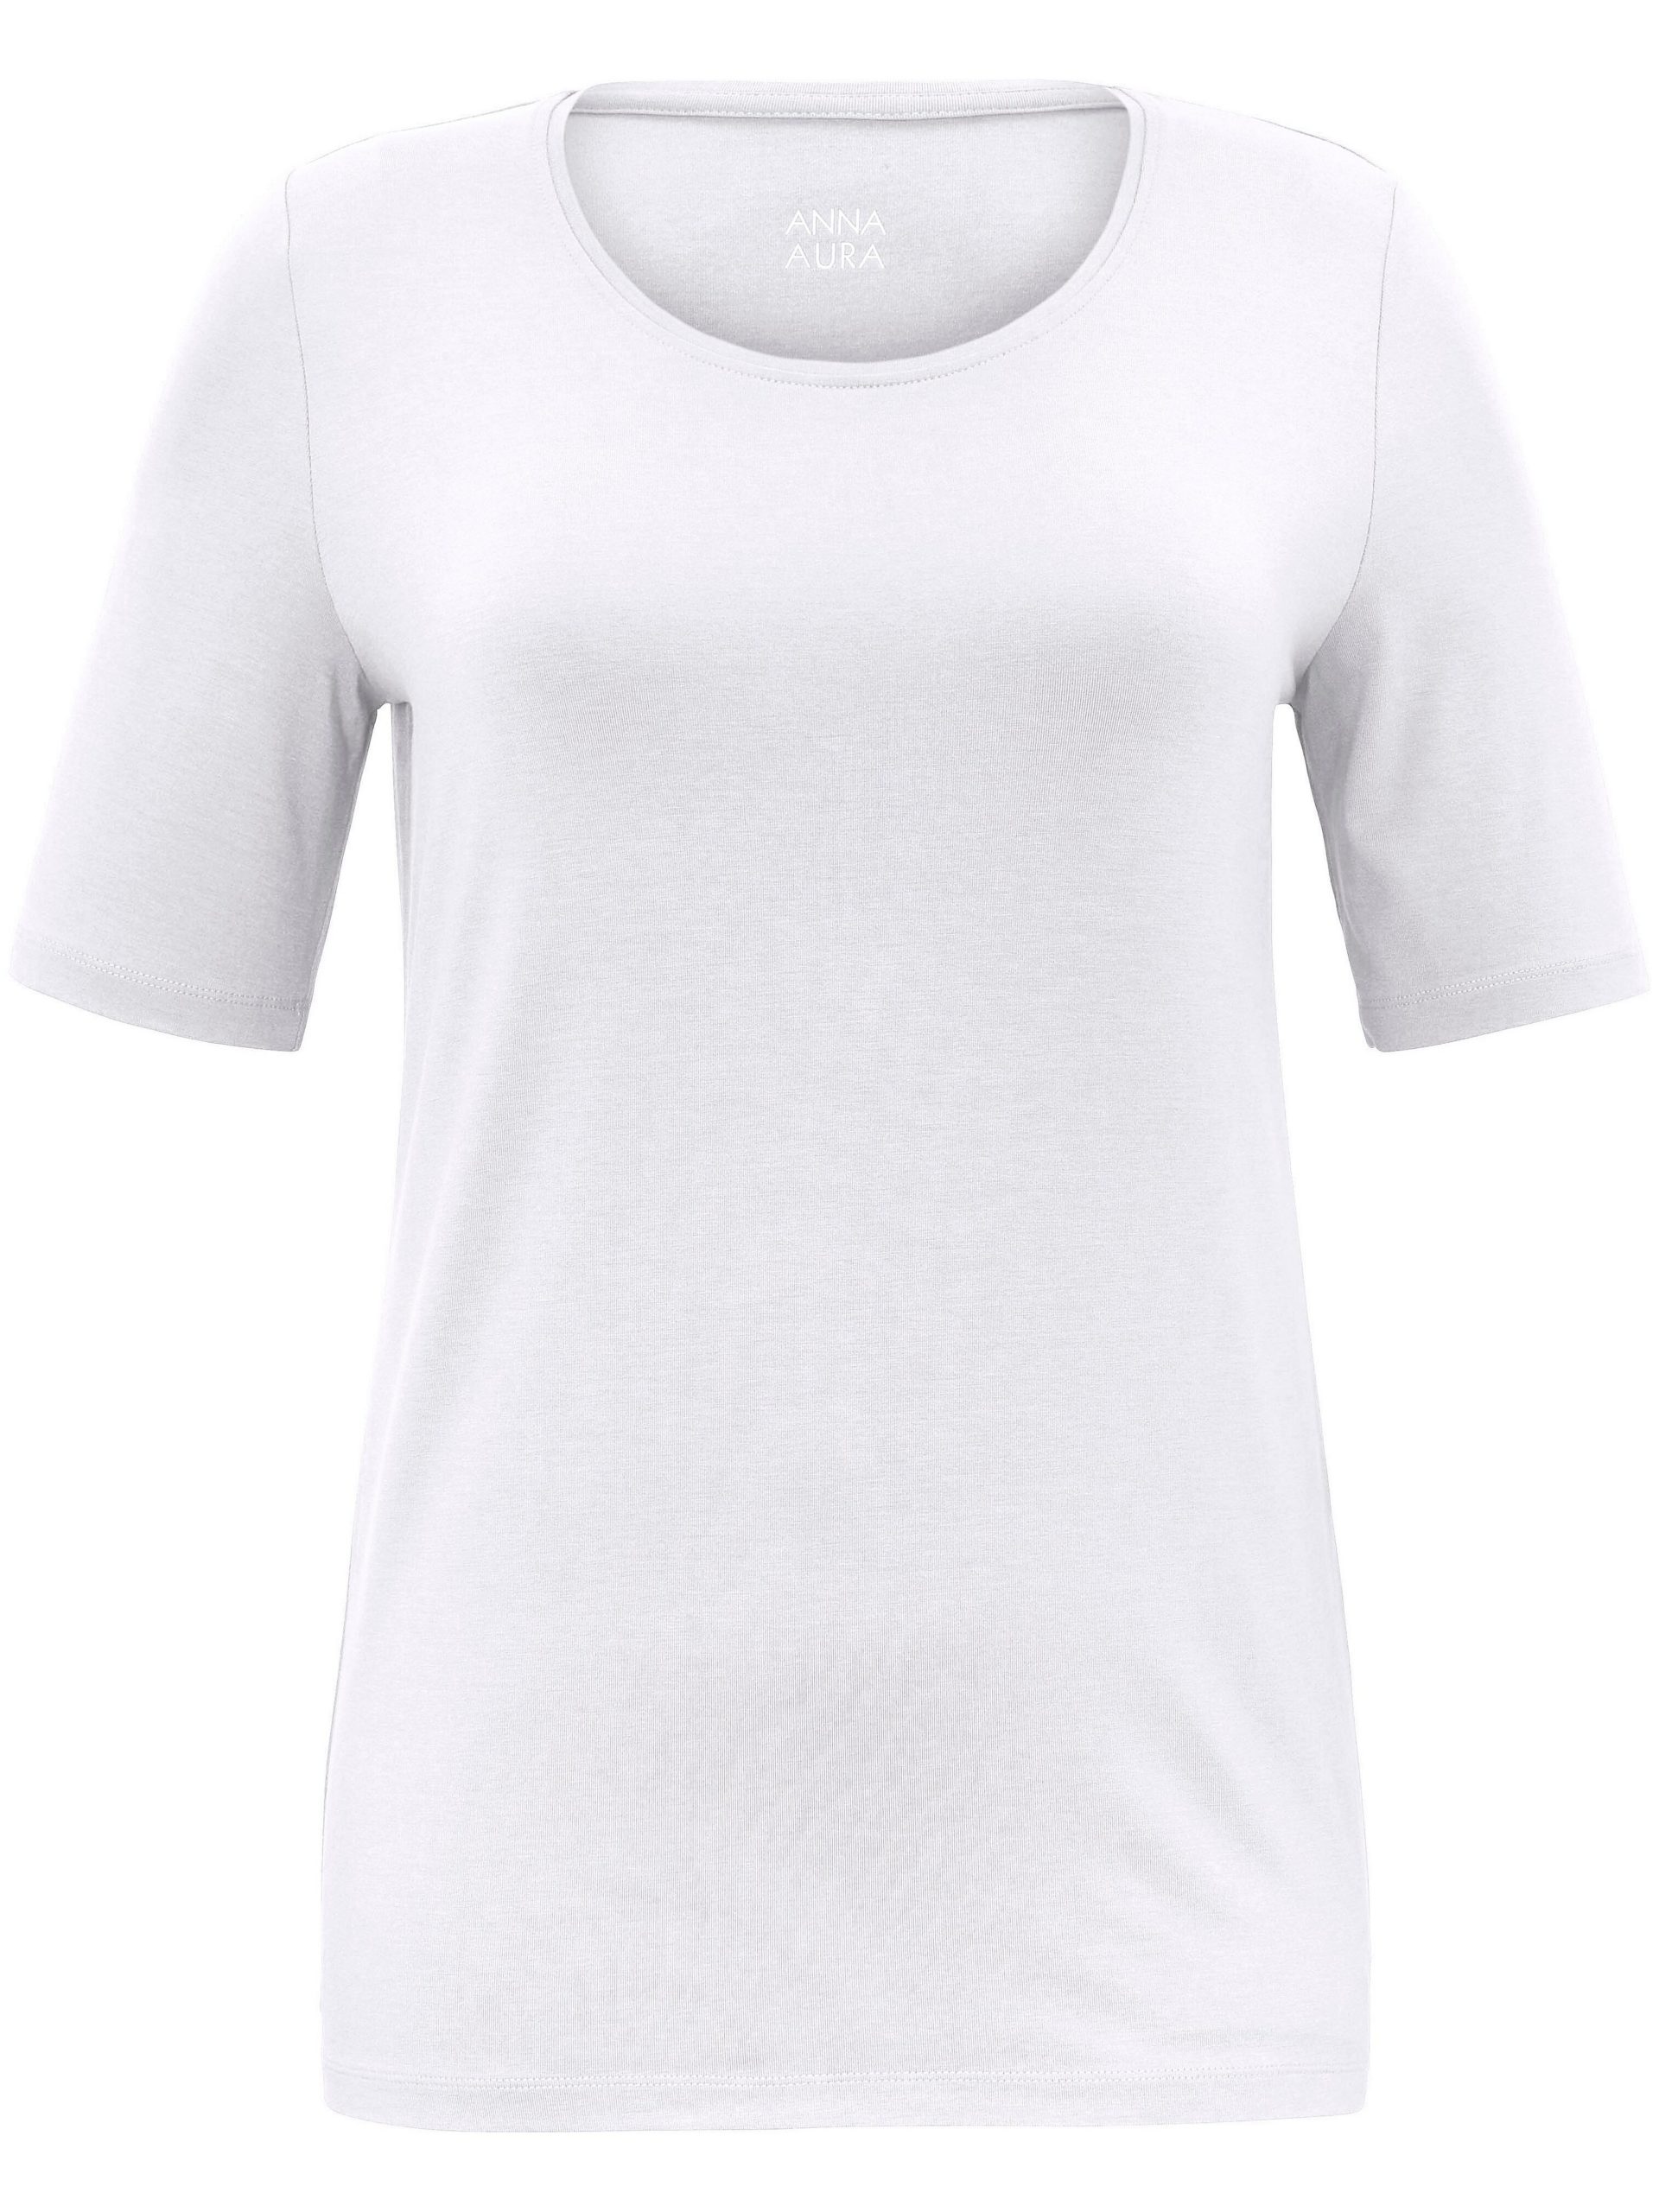 T-shirt met korte mouwen Van Anna Aura wit Kopen